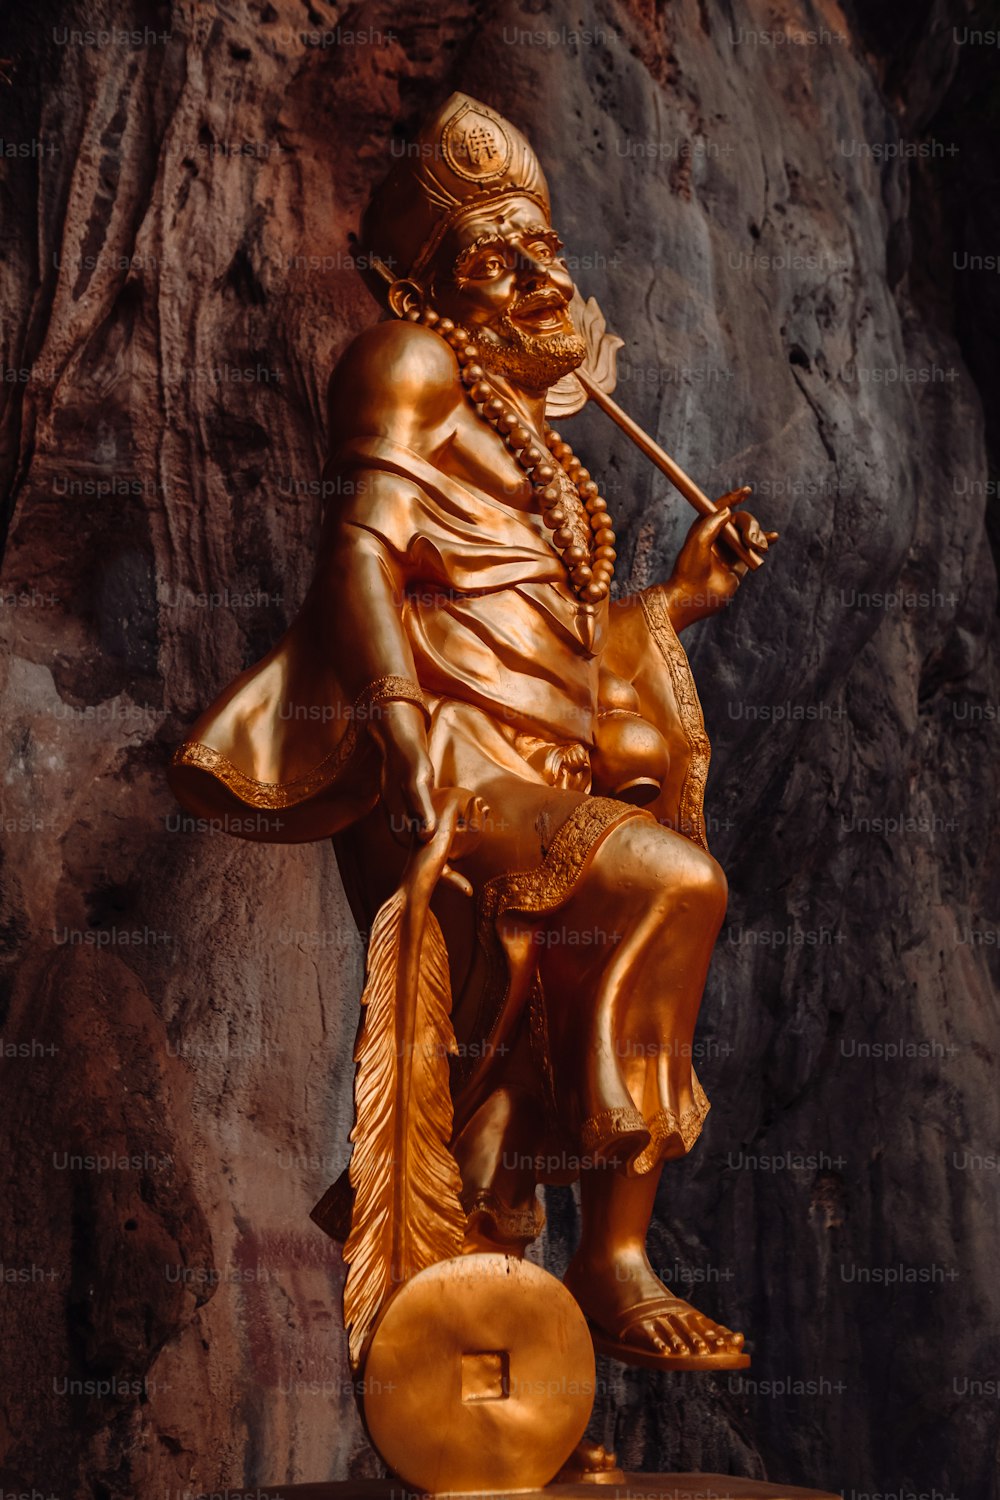 Une statue d’un homme avec une pipe à la main